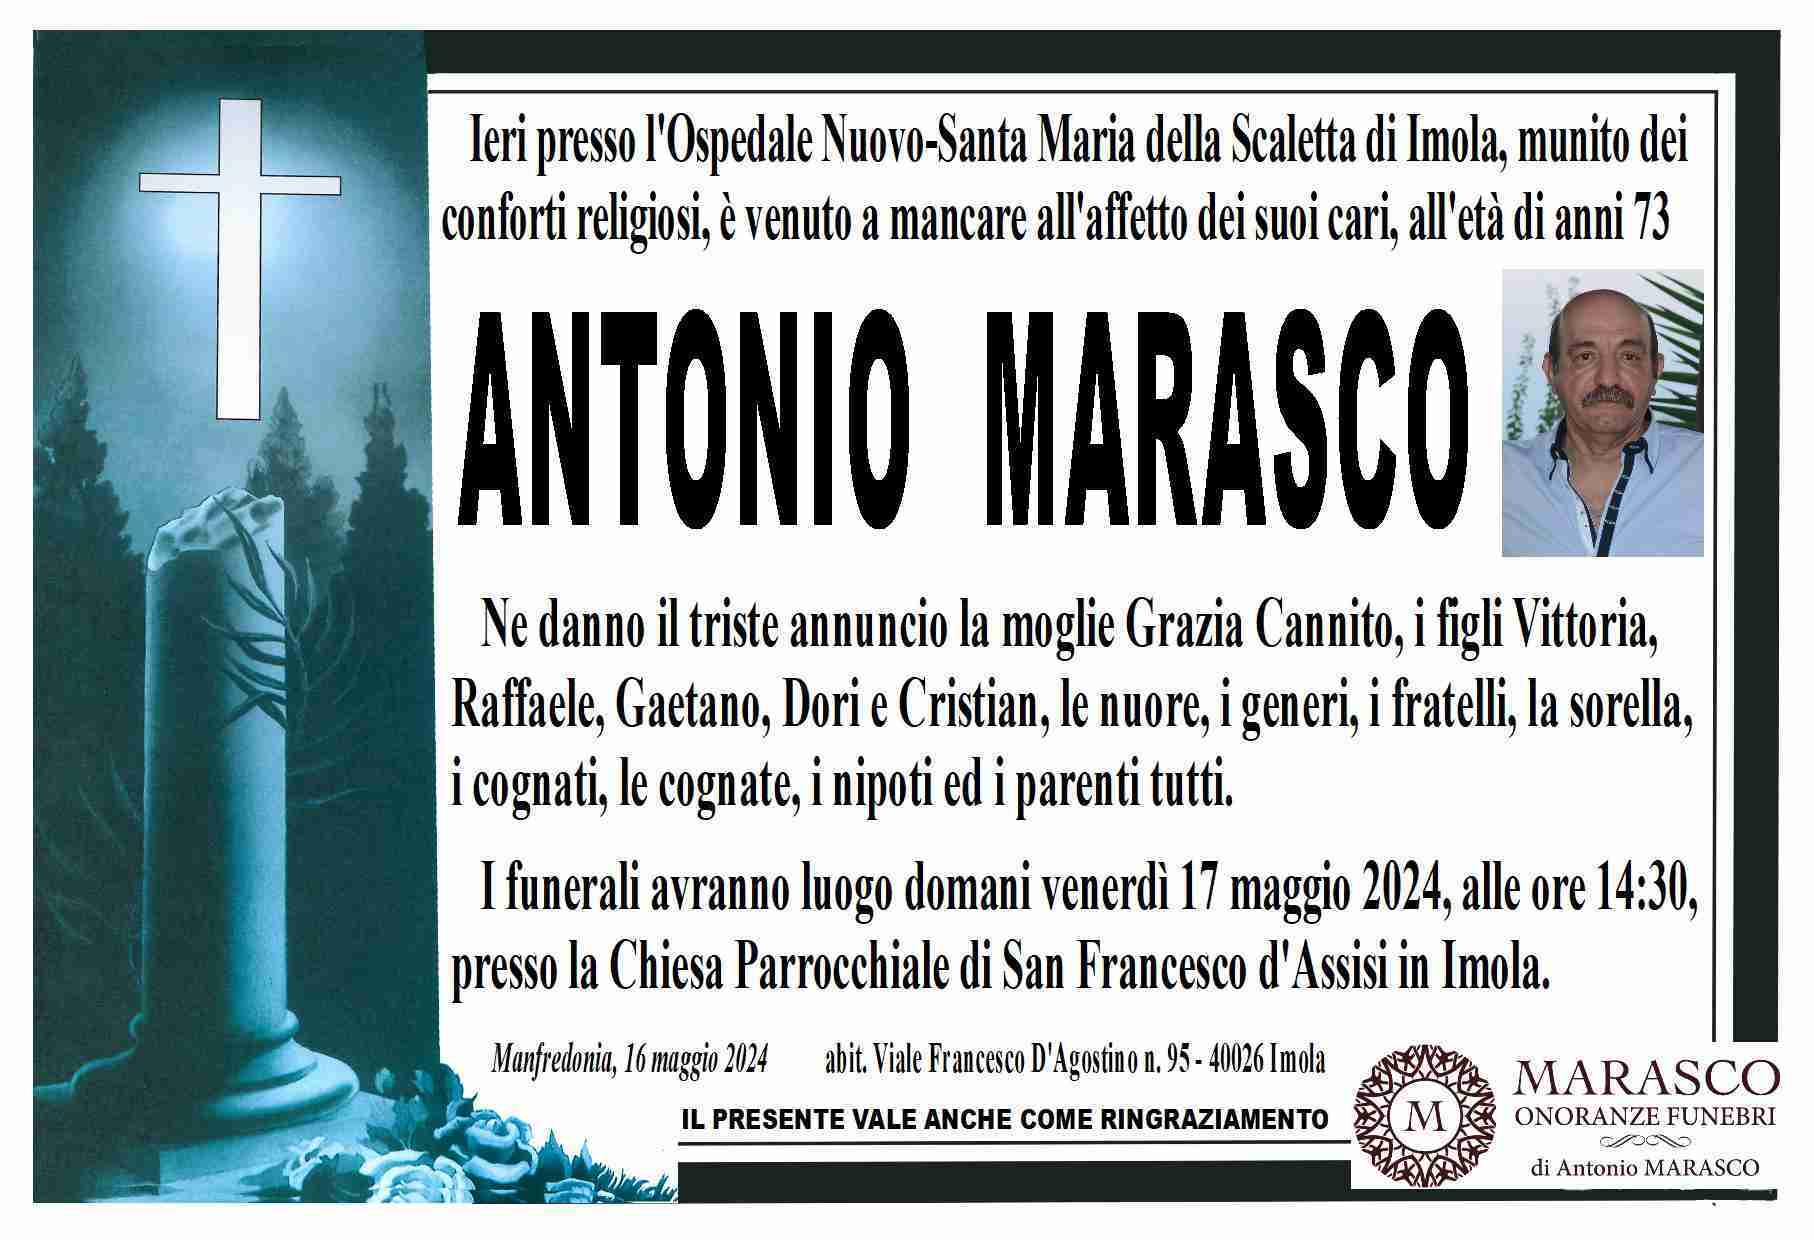 Antonio Marasco